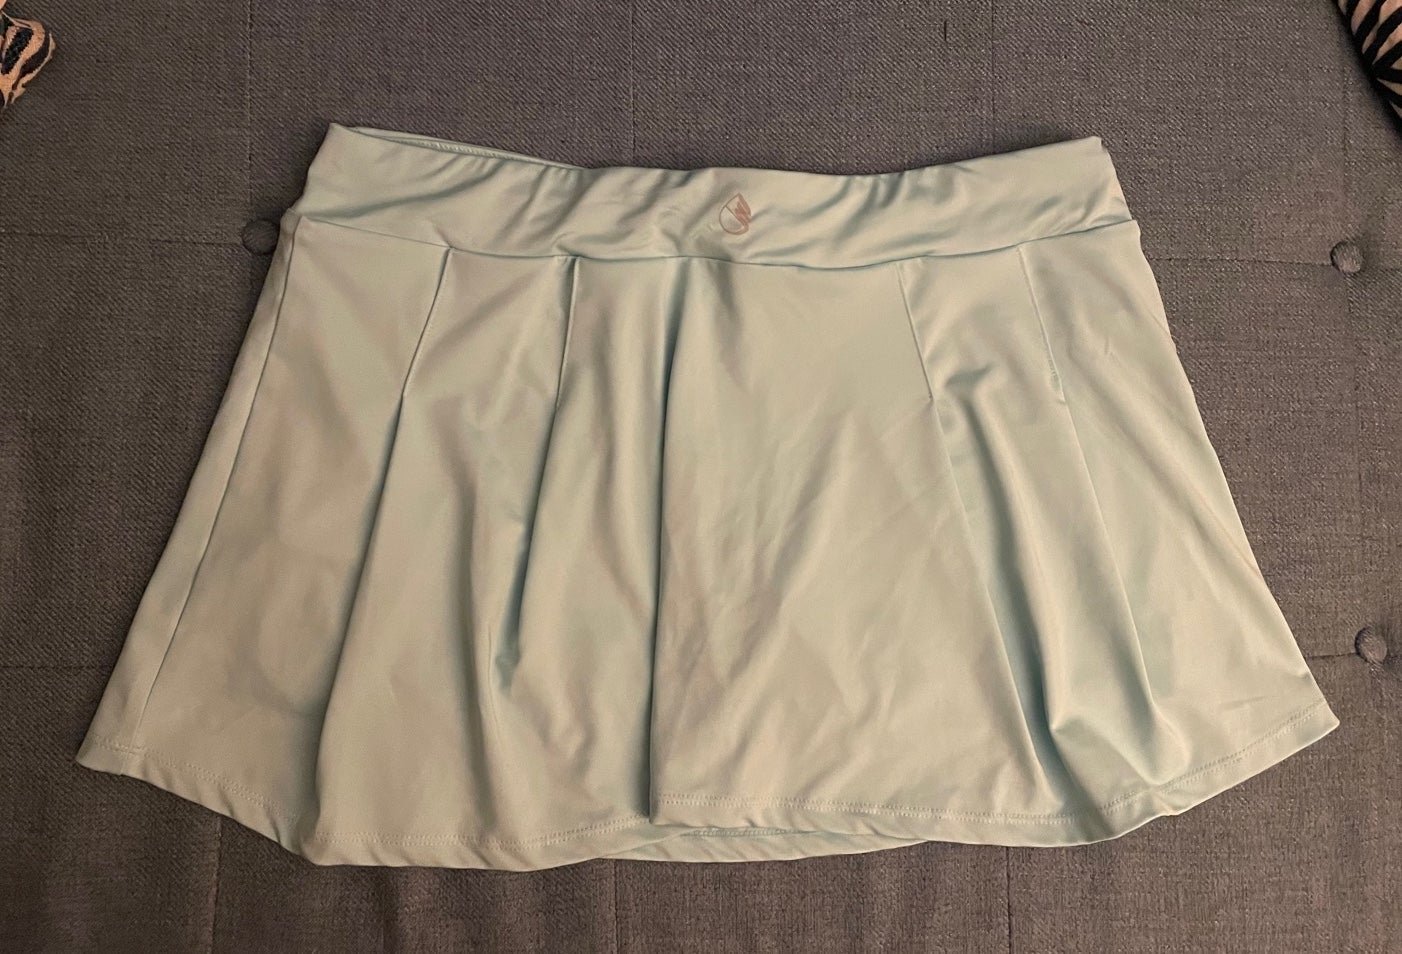 Custom New tennis golf Skirt skort size L HDaVDraxu Dis